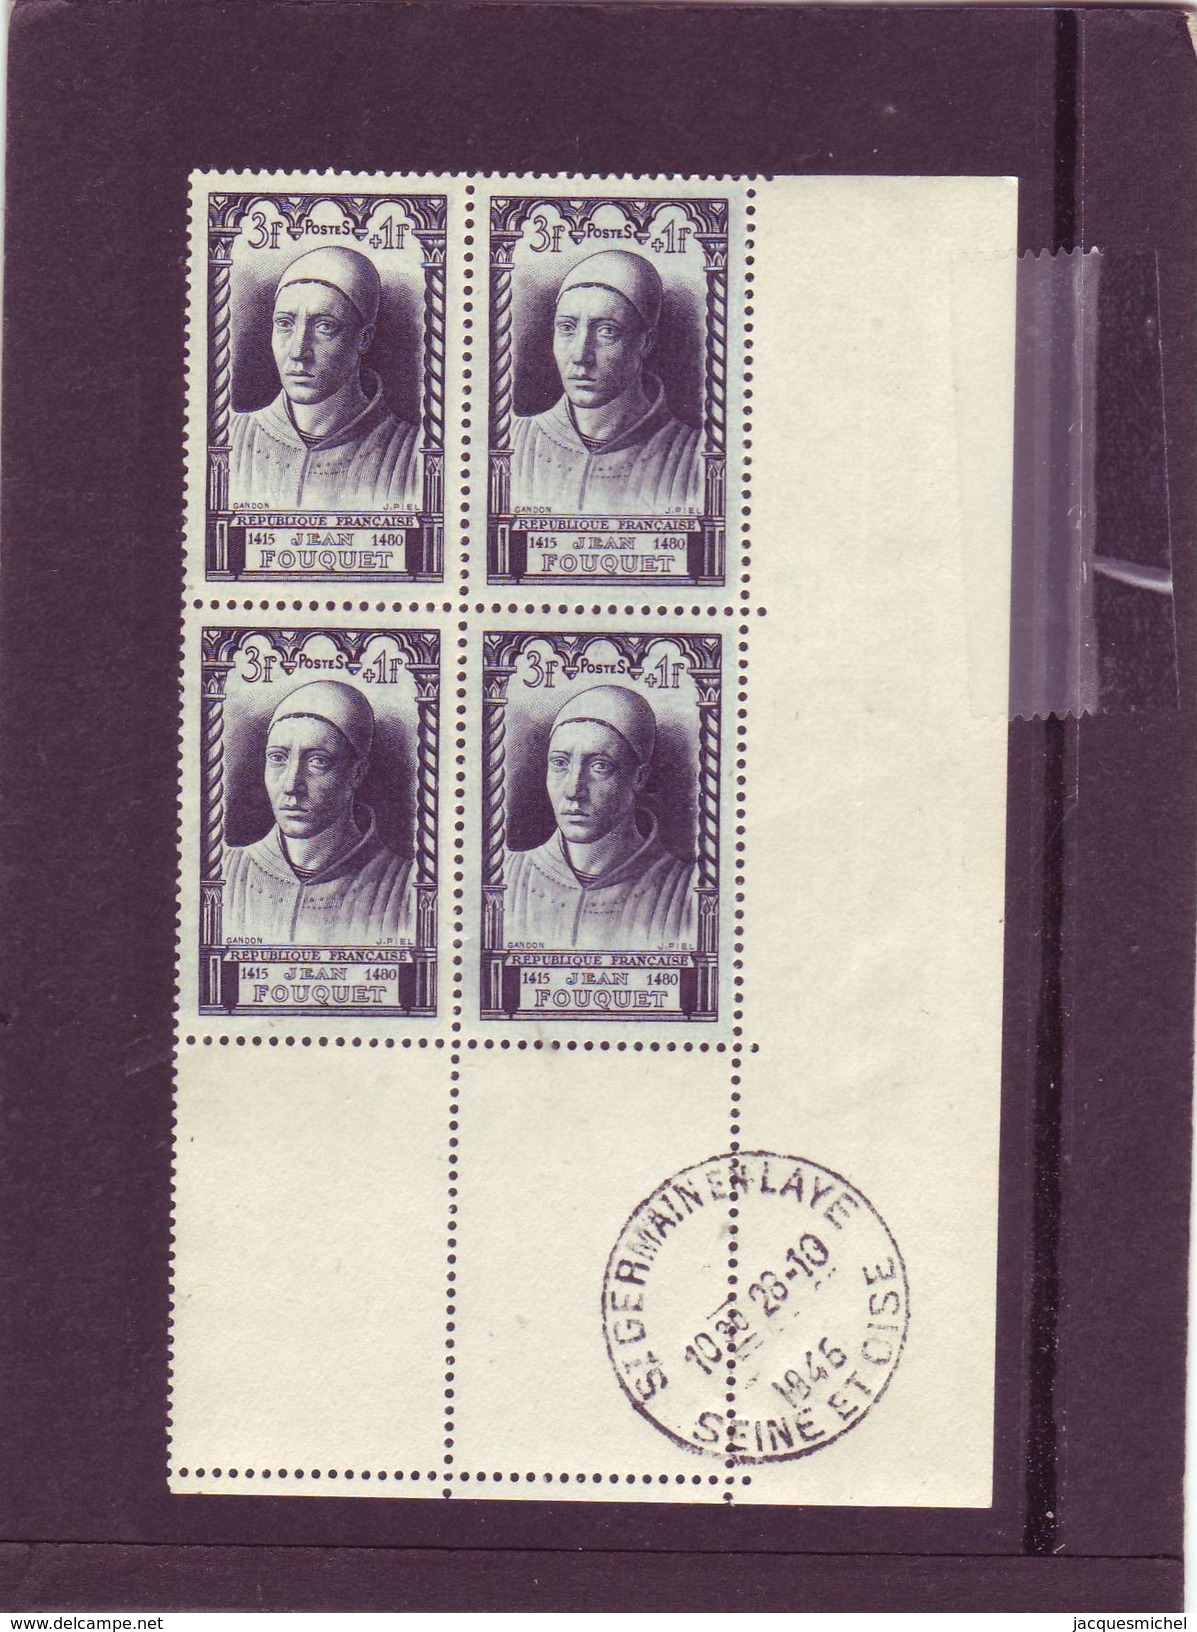 N° 766 - 3F+1F - JEAN FOUQUET - Bloc De 4 - Cachet SAINT GERMAIN EN LAYE - 28.10.1946 - - 1940-1949